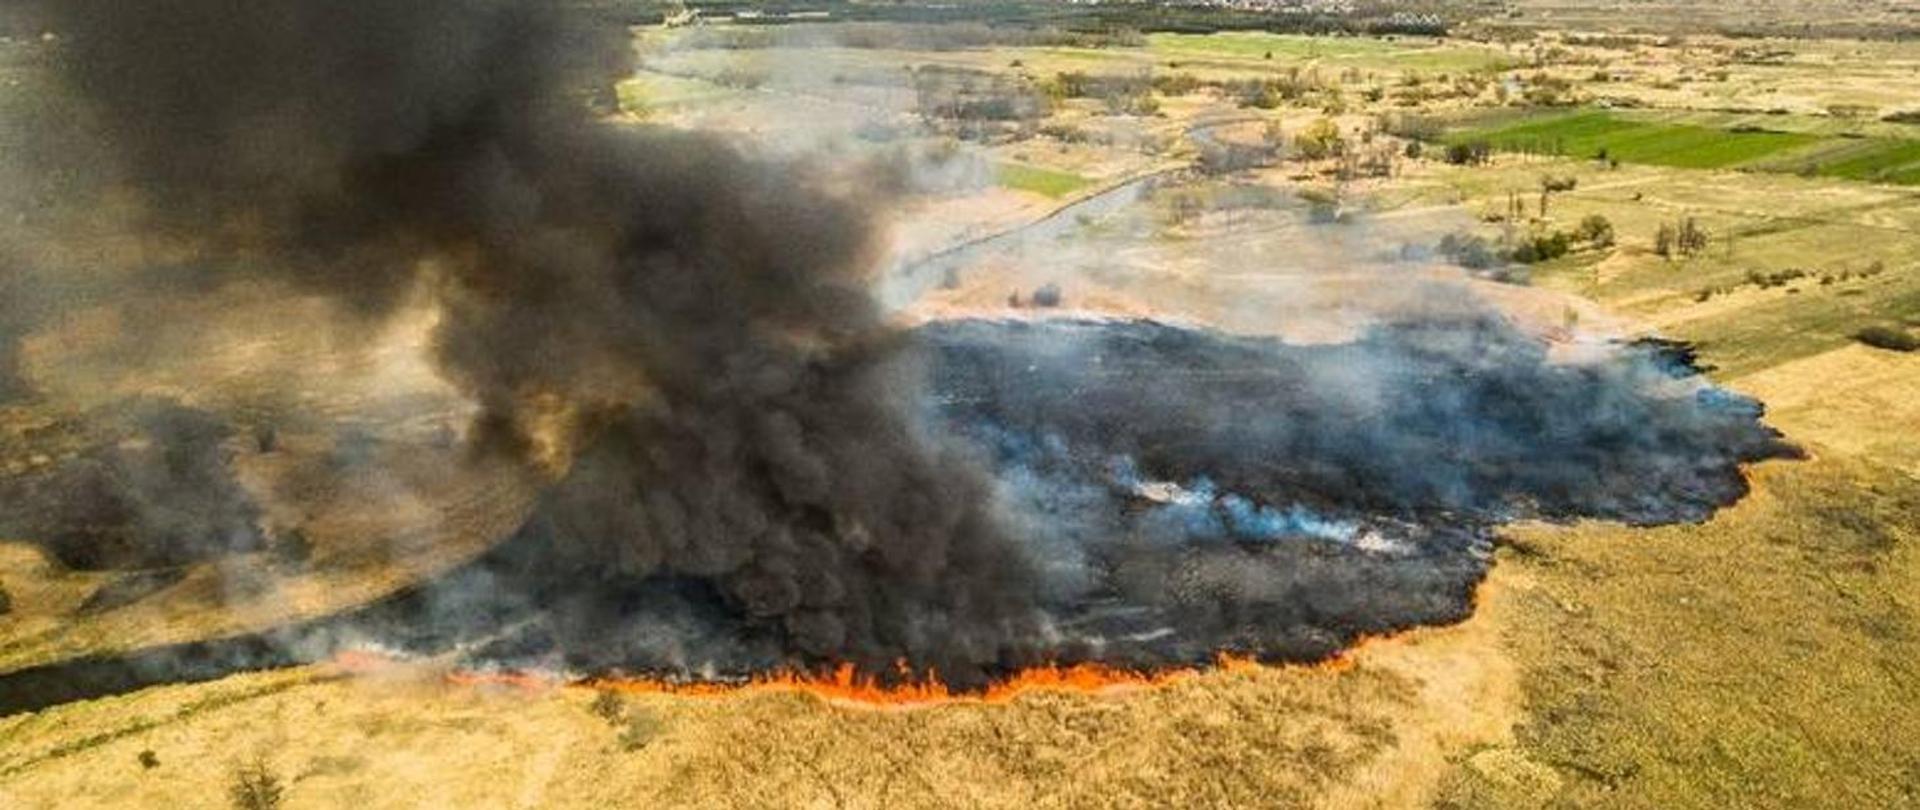 Zdjęcie przedstawia pożar suchej roślinności widoczny z powietrza